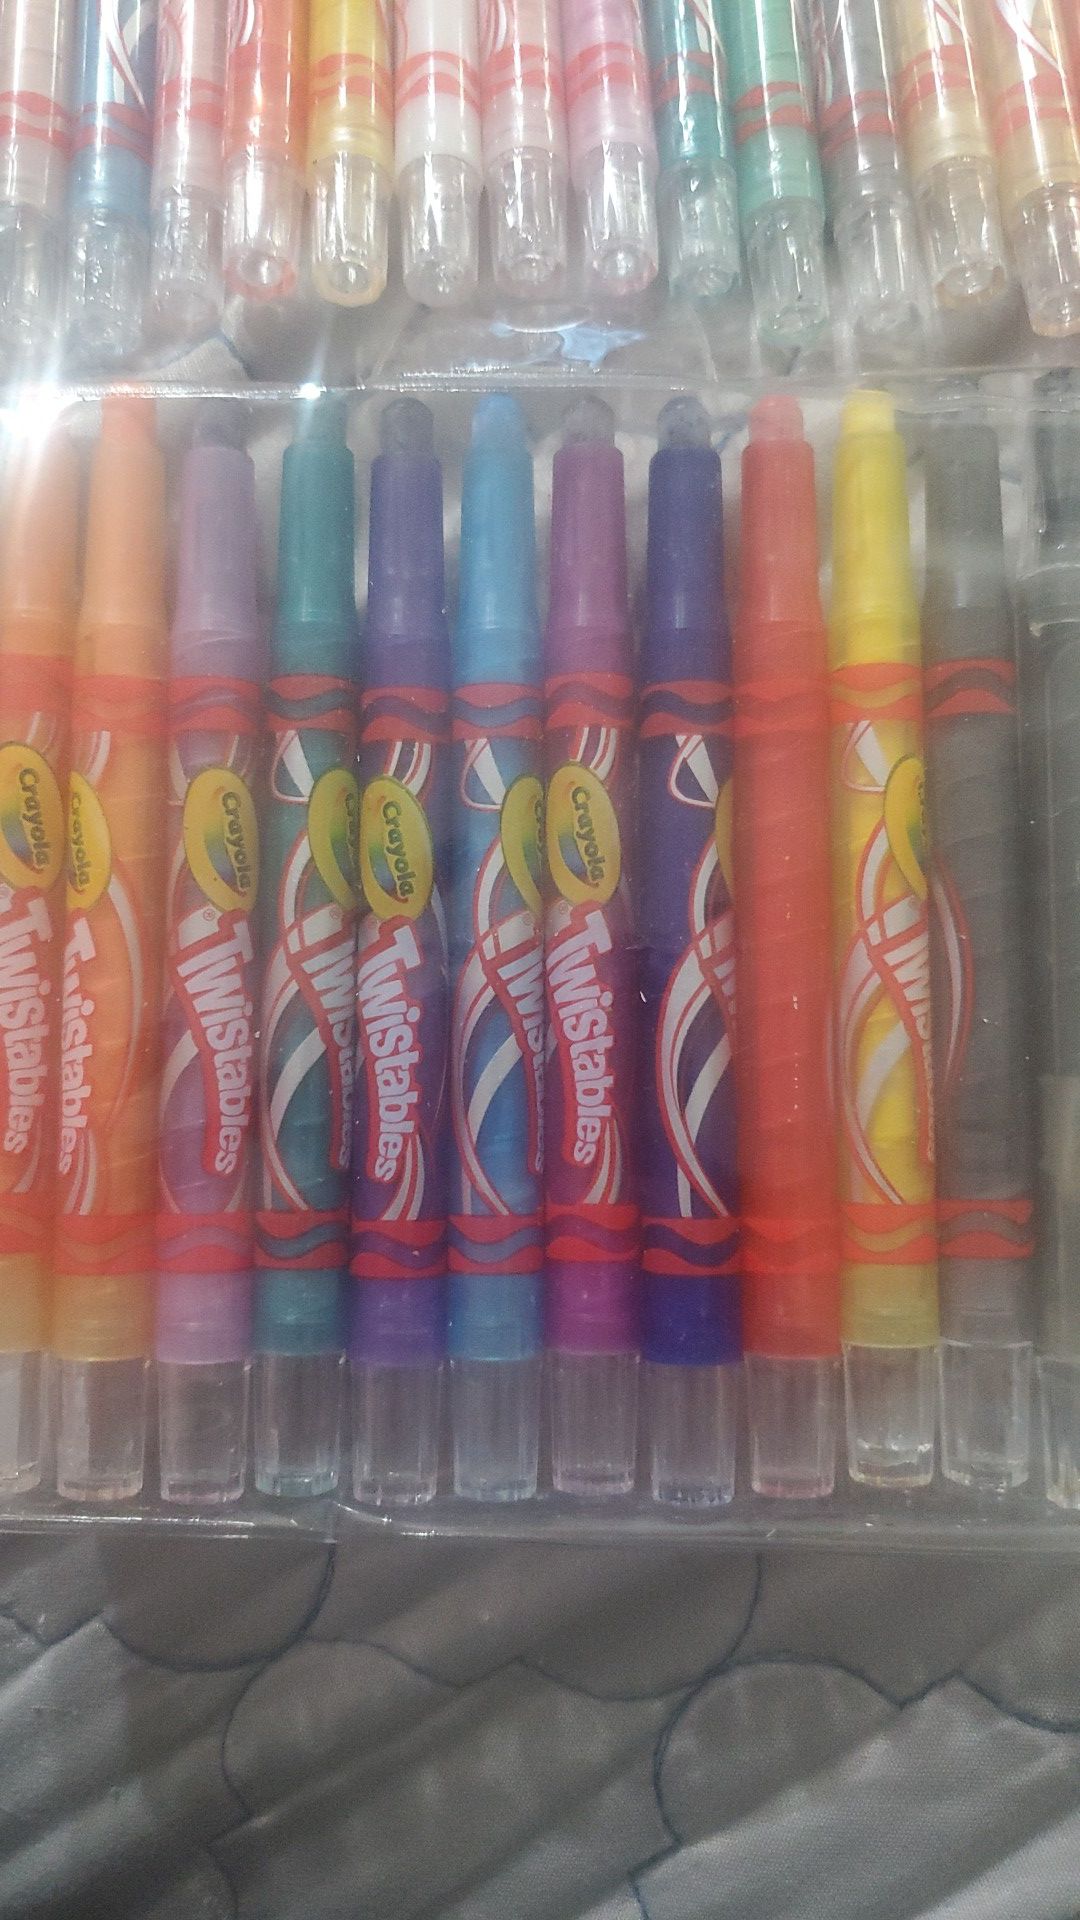 60 Twistable crayolas